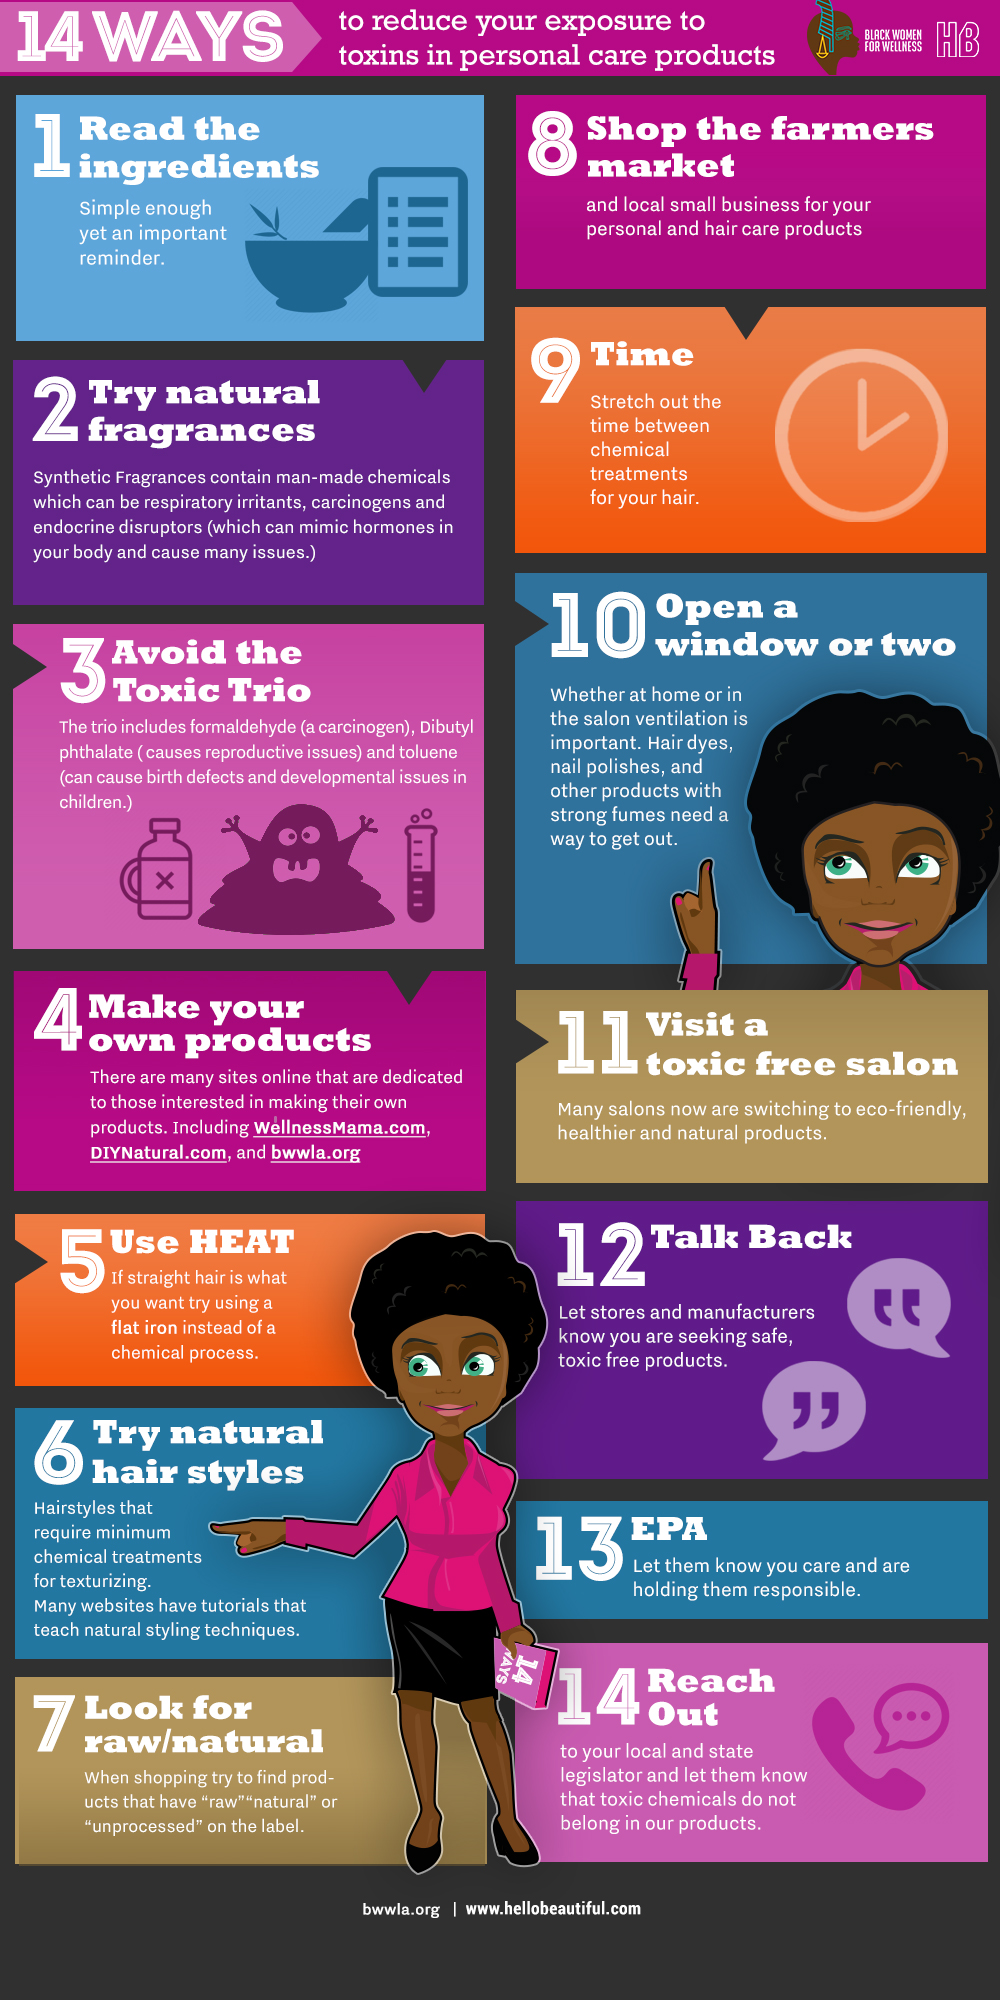 Black Women For Wellness Fact Sheet